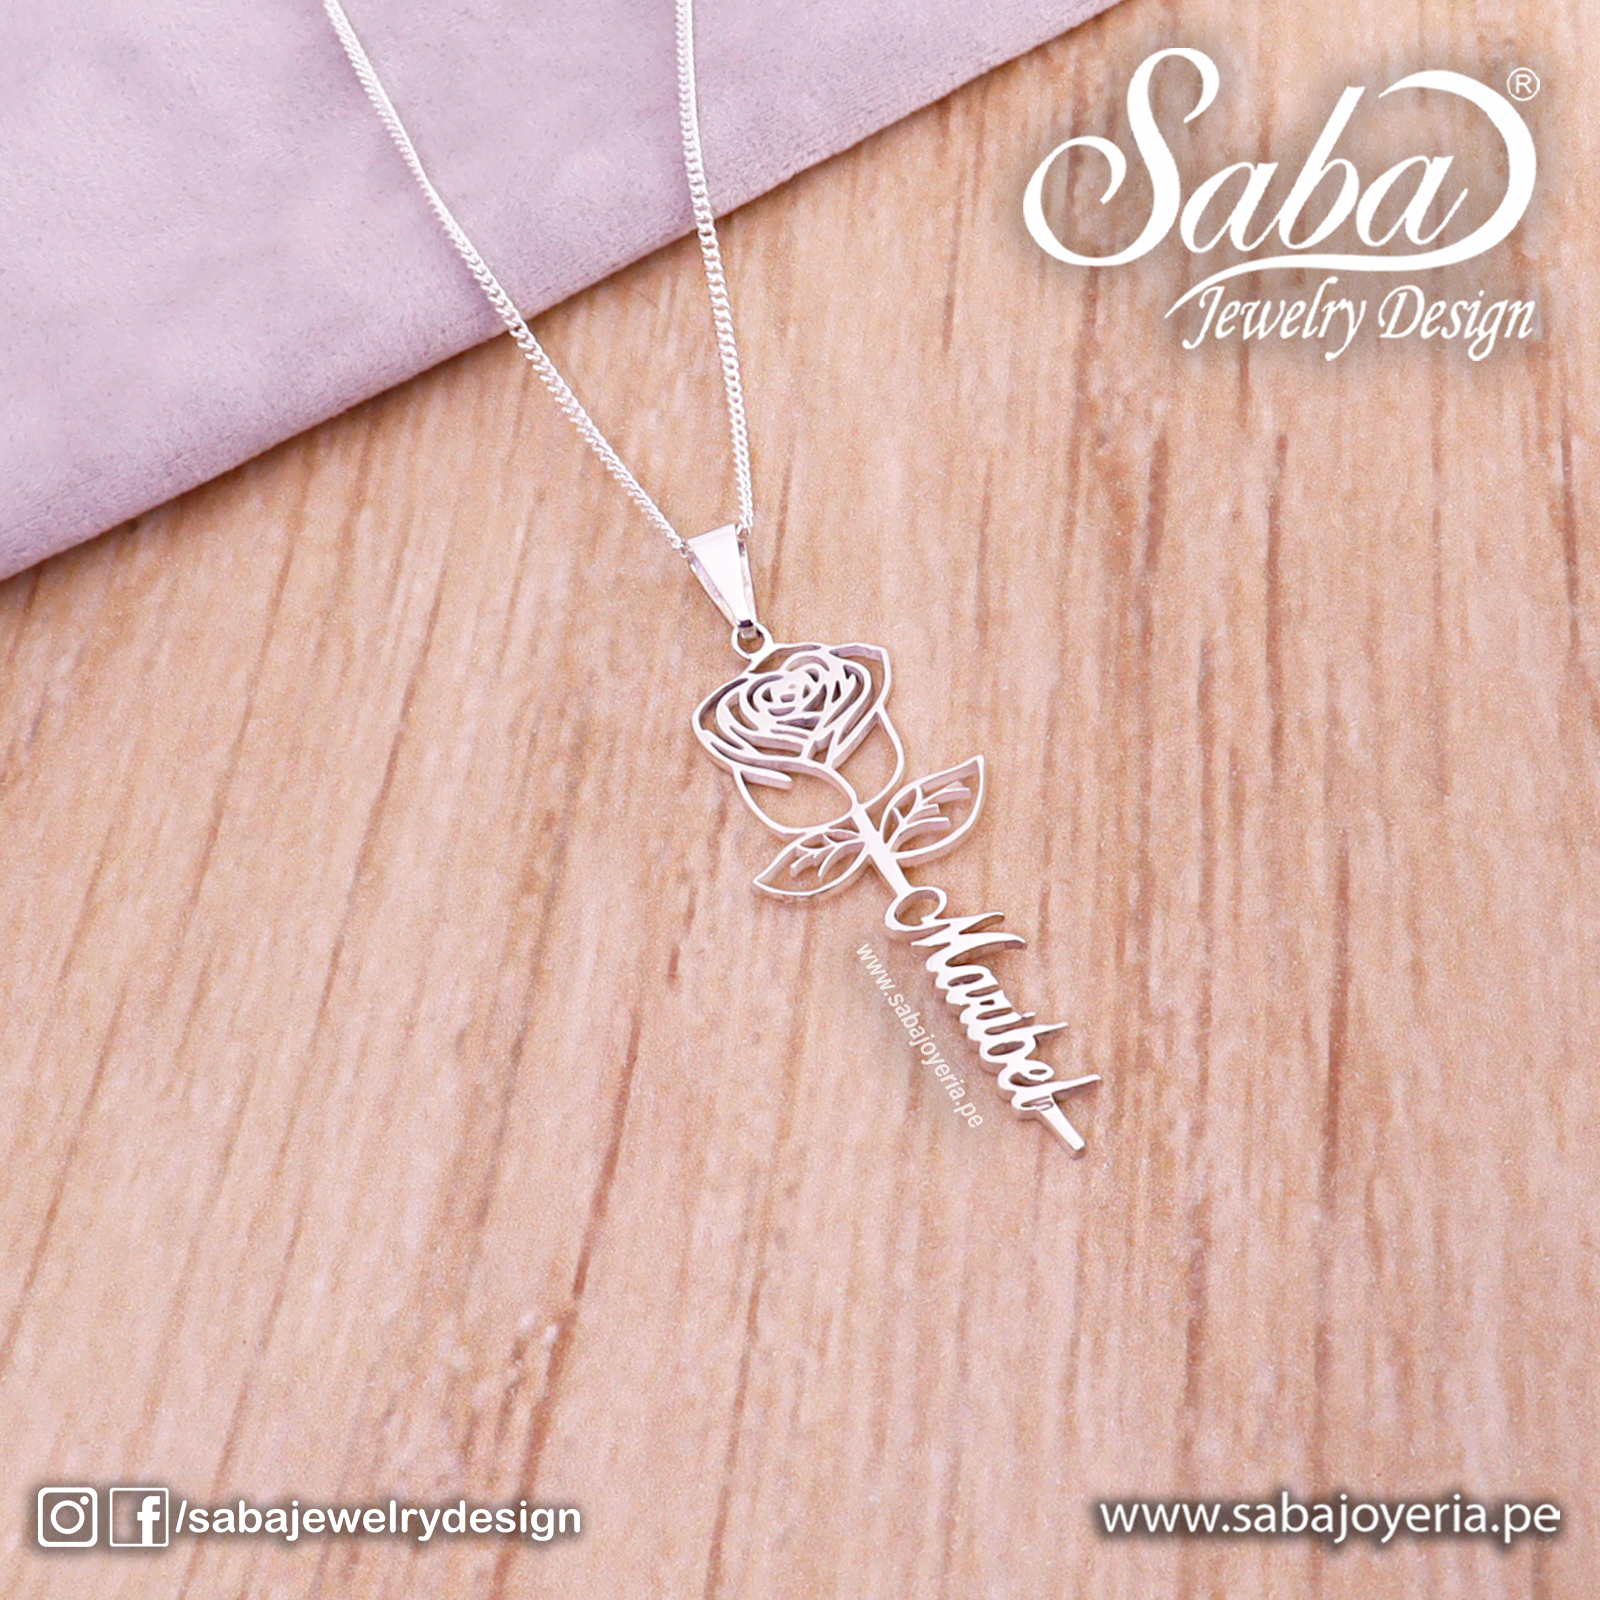 Nombre Personalizado – Saba Jewelry Design